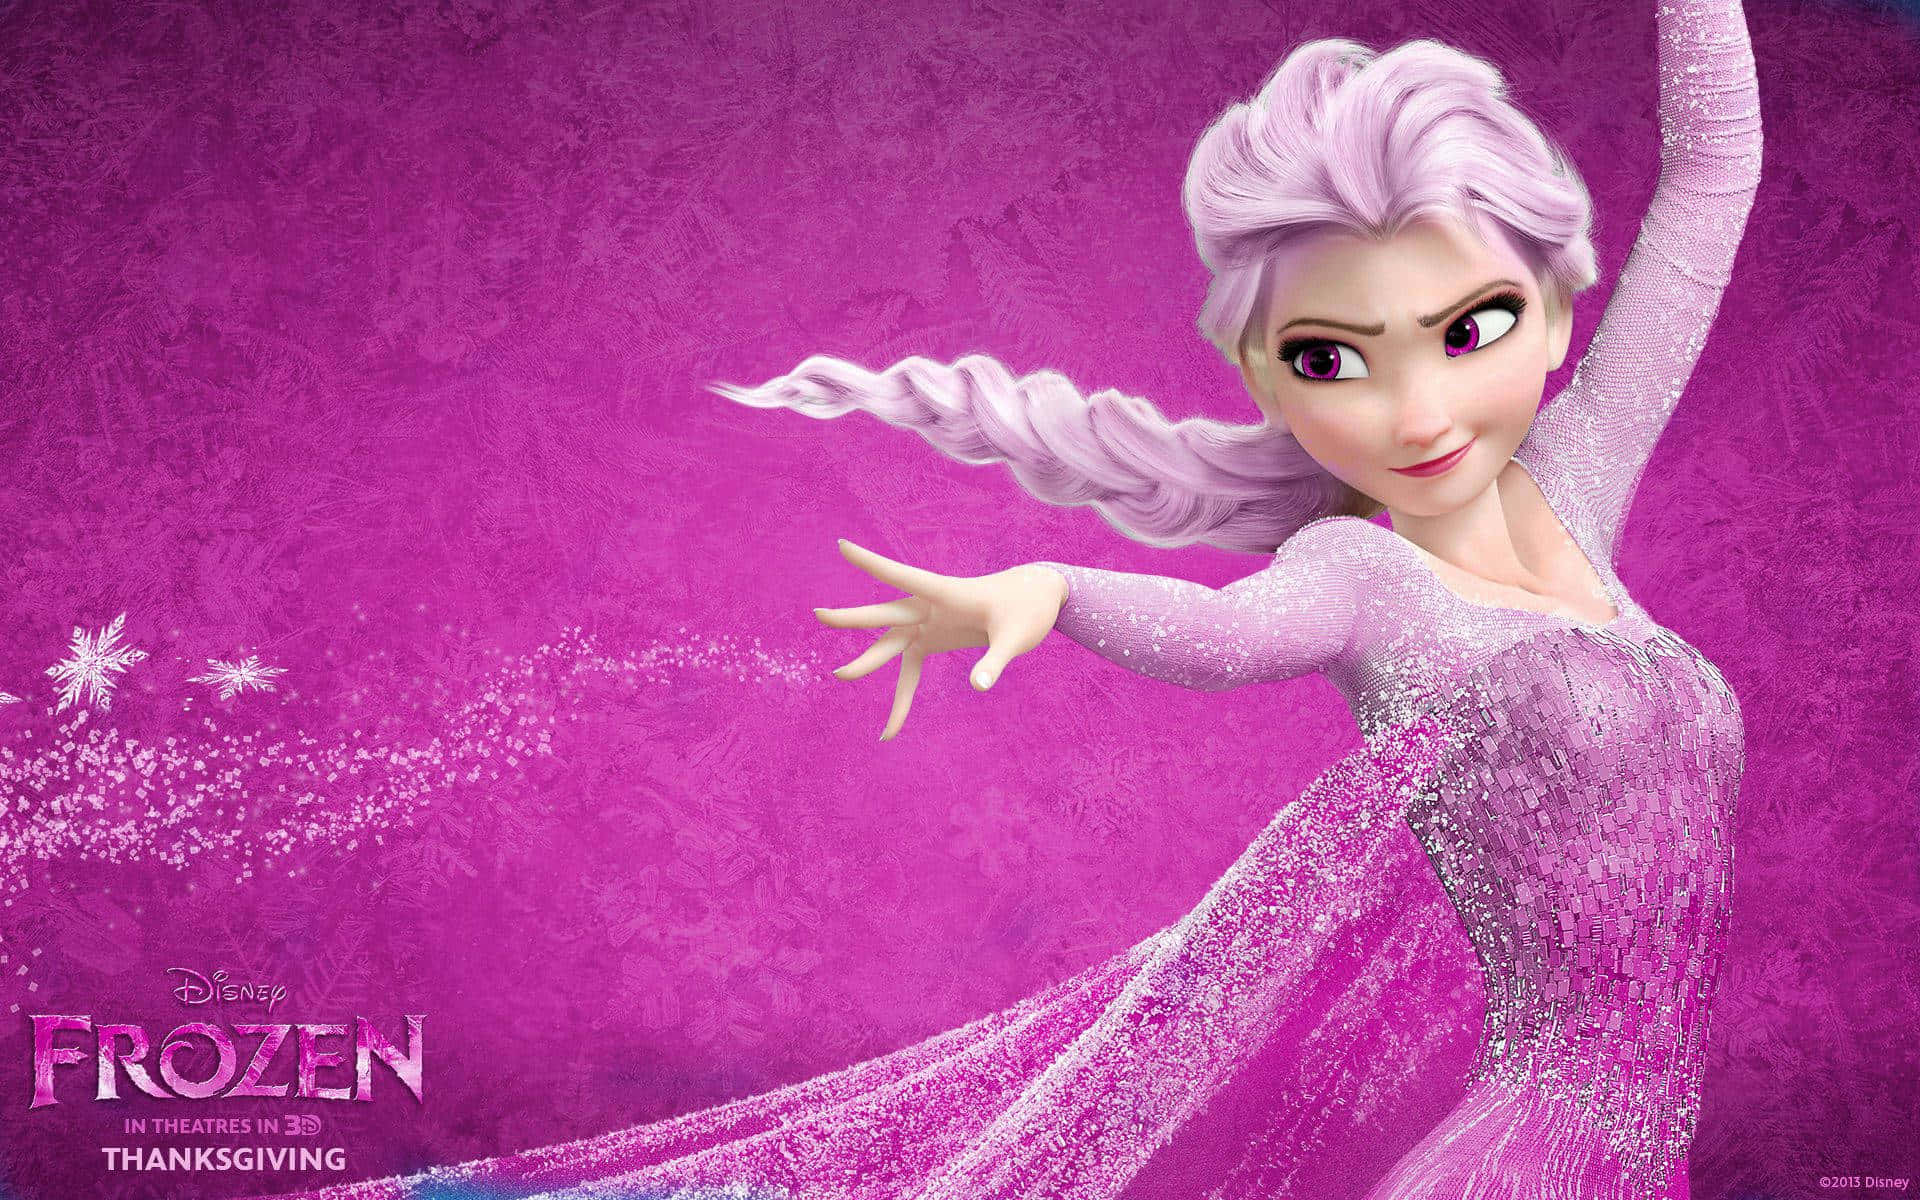 Queen Elsa from Disney's Frozen 2